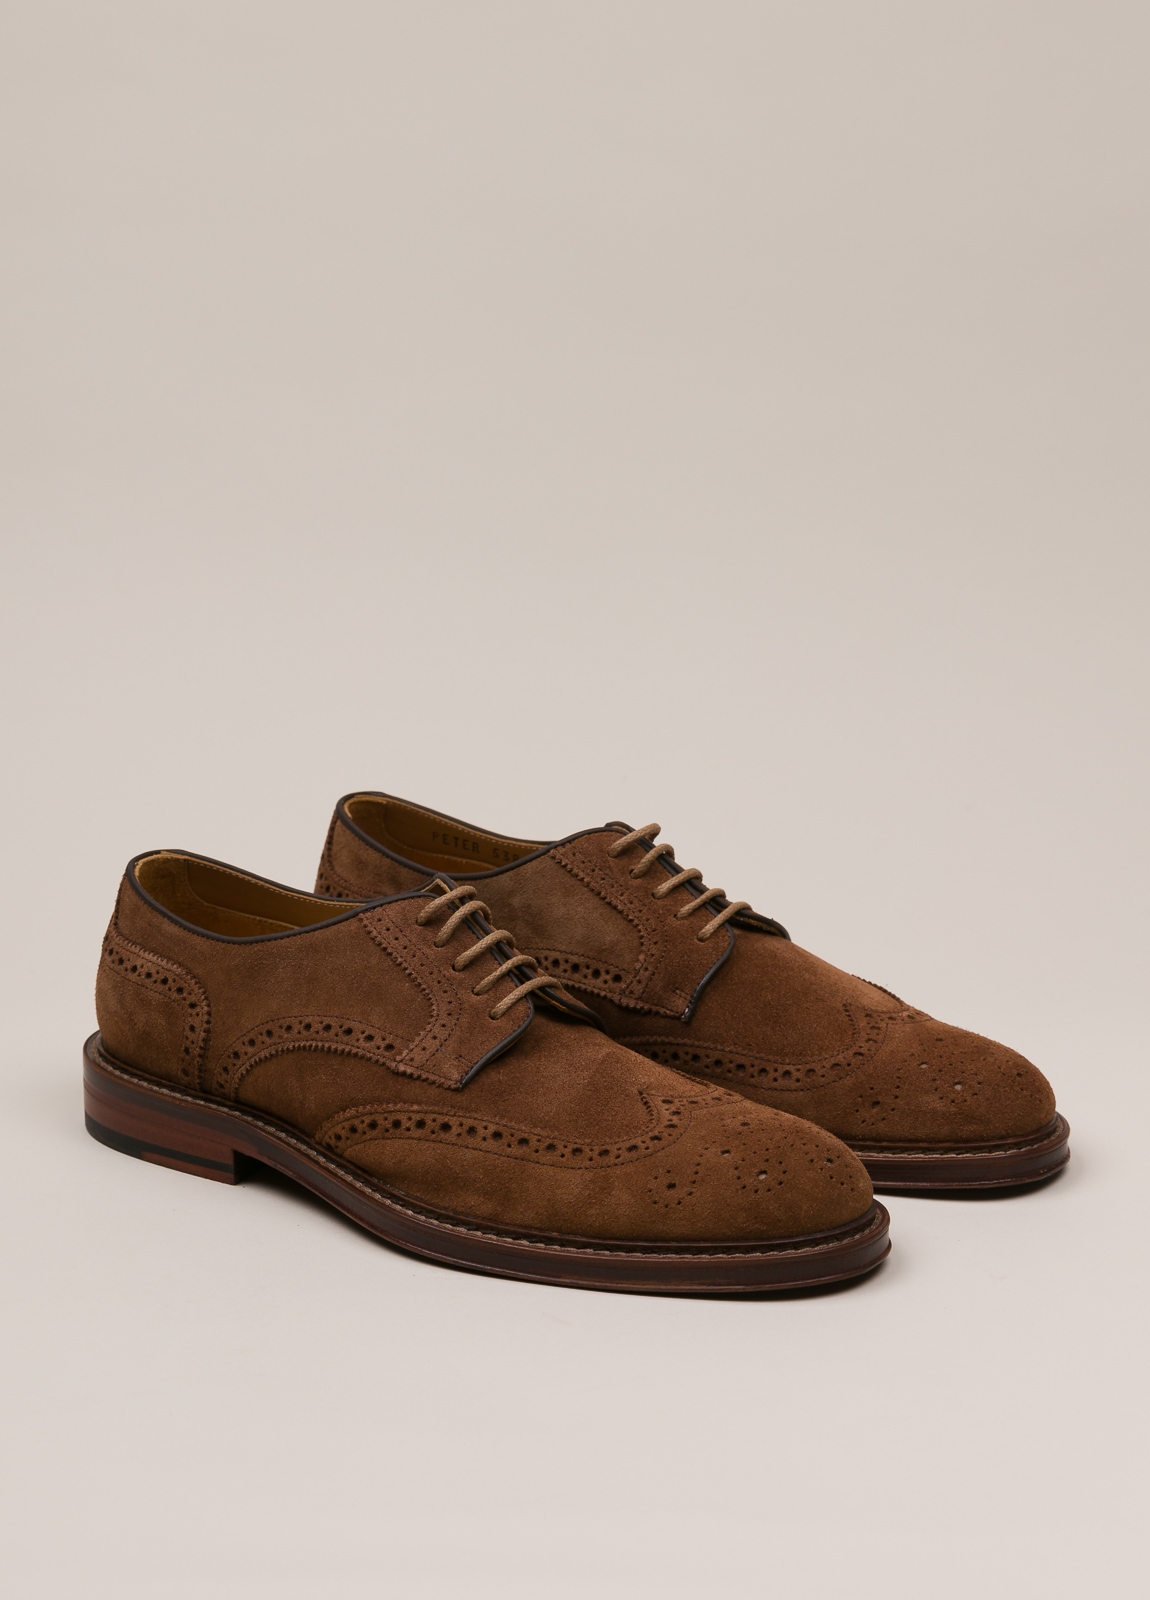 Zapato sport wear furest colección marrón - Ítem4